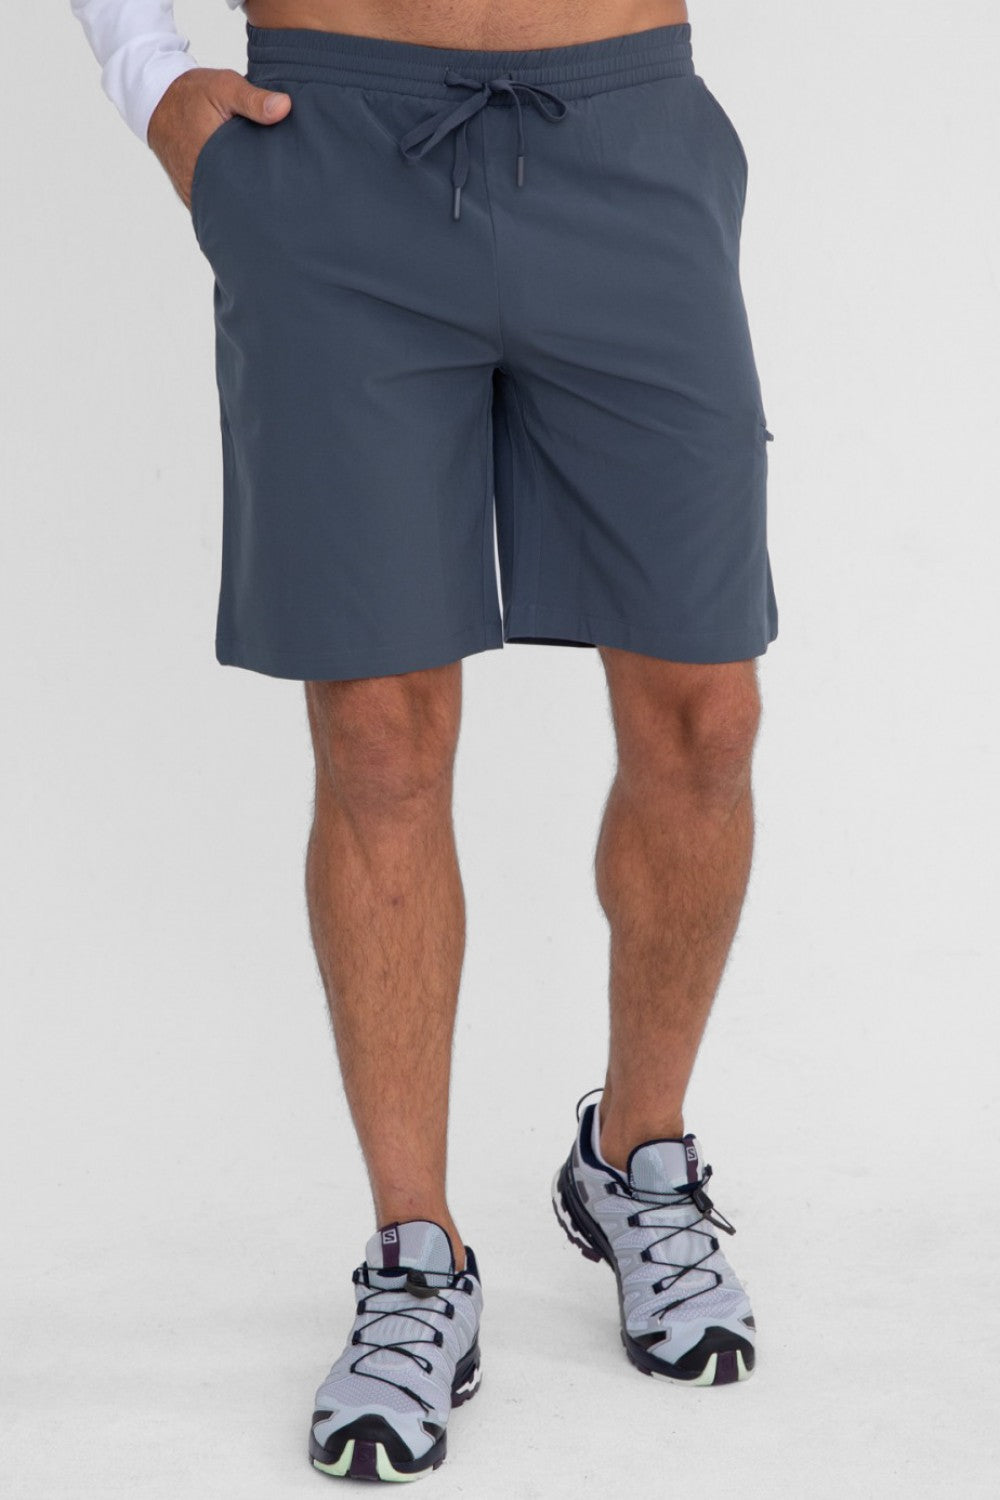 Men’s Active Shorts